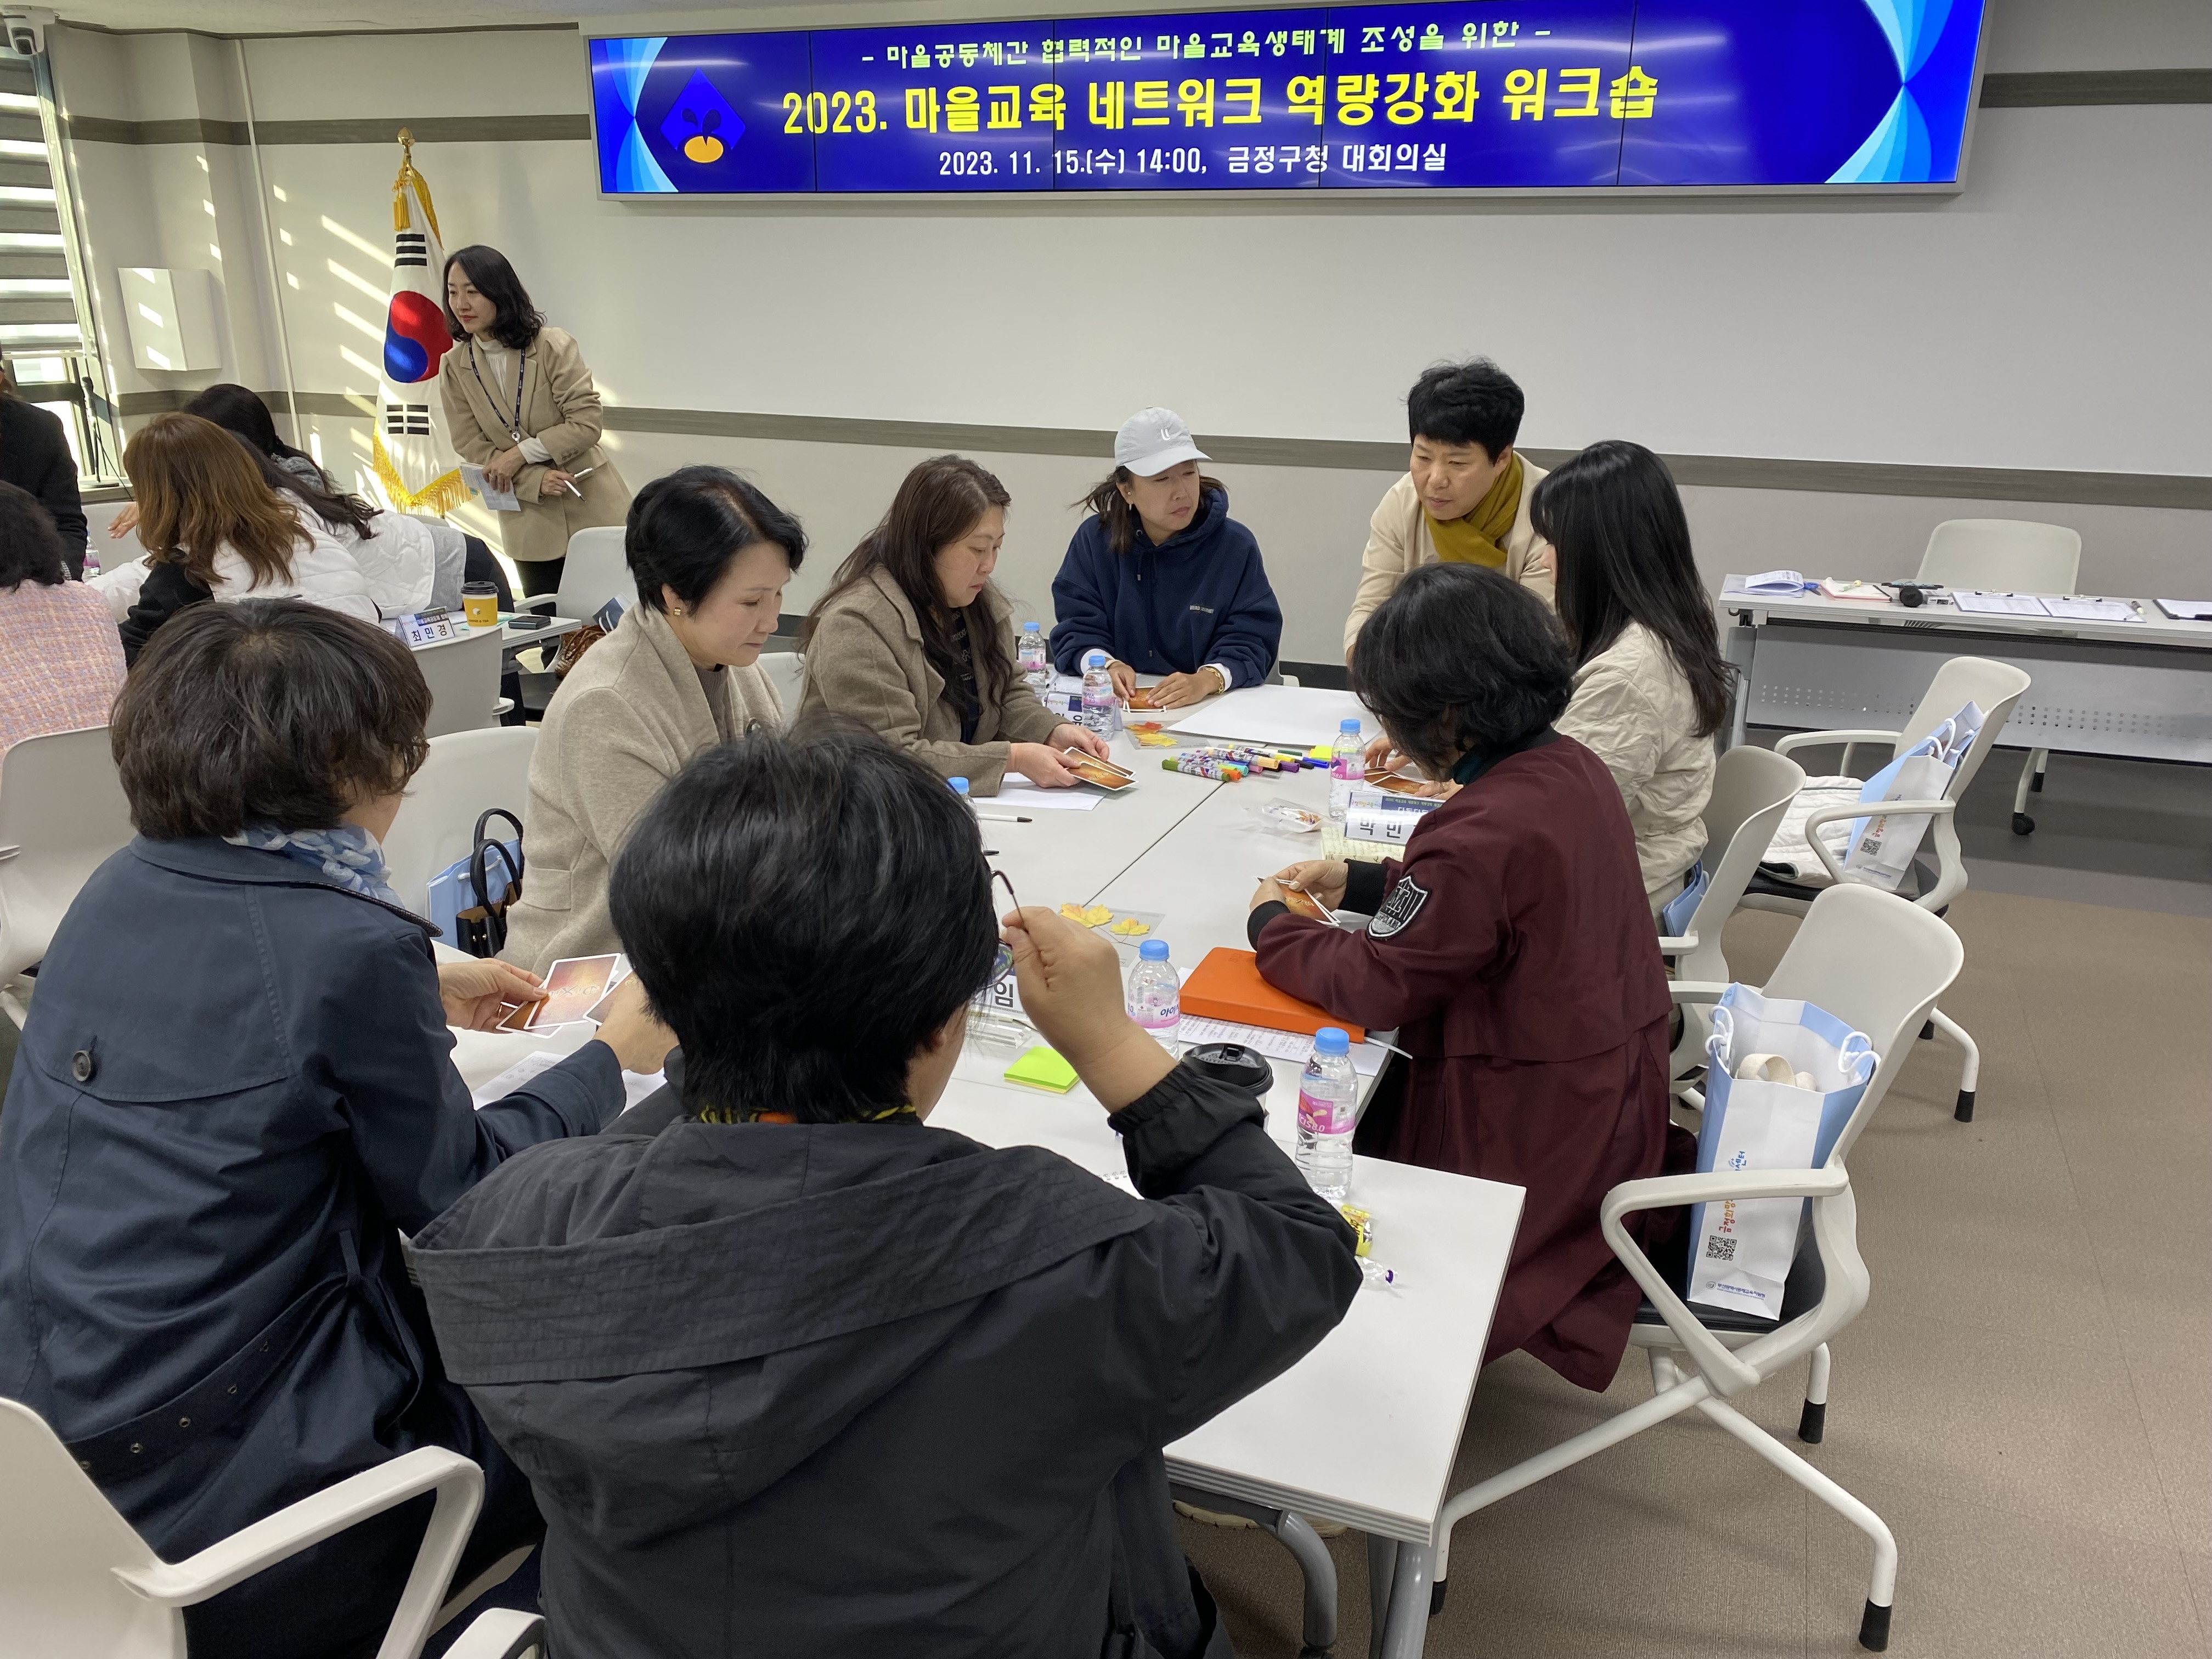 2023. 마을교육 네트워크 역량 강화 워크숍 개최(3) 4